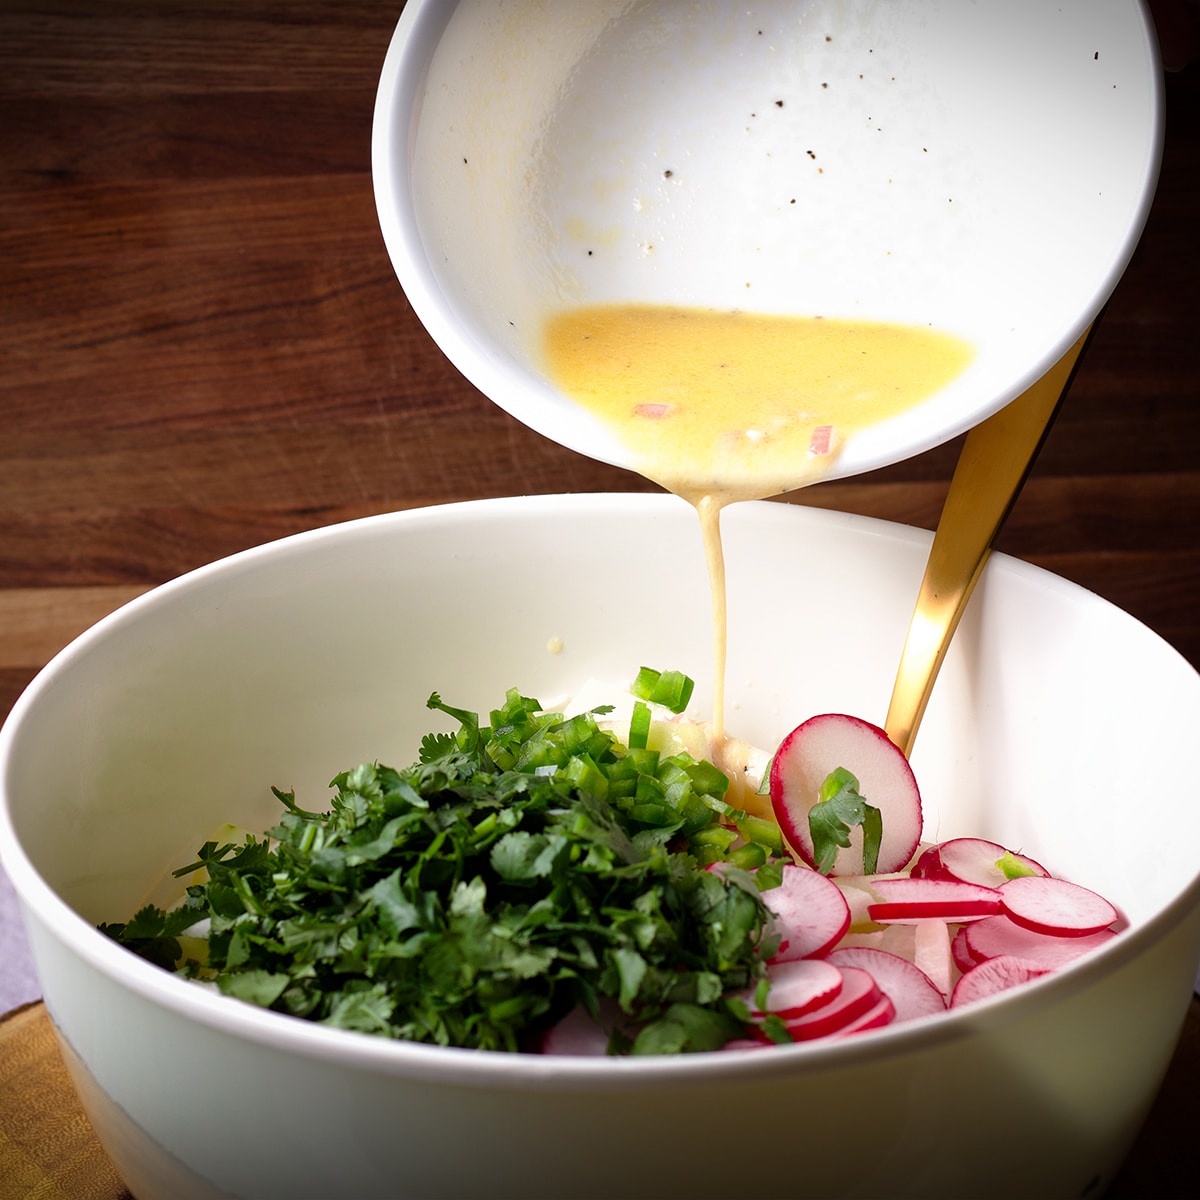 Pouring honey lime dressing over vegetables to make jicama salad.